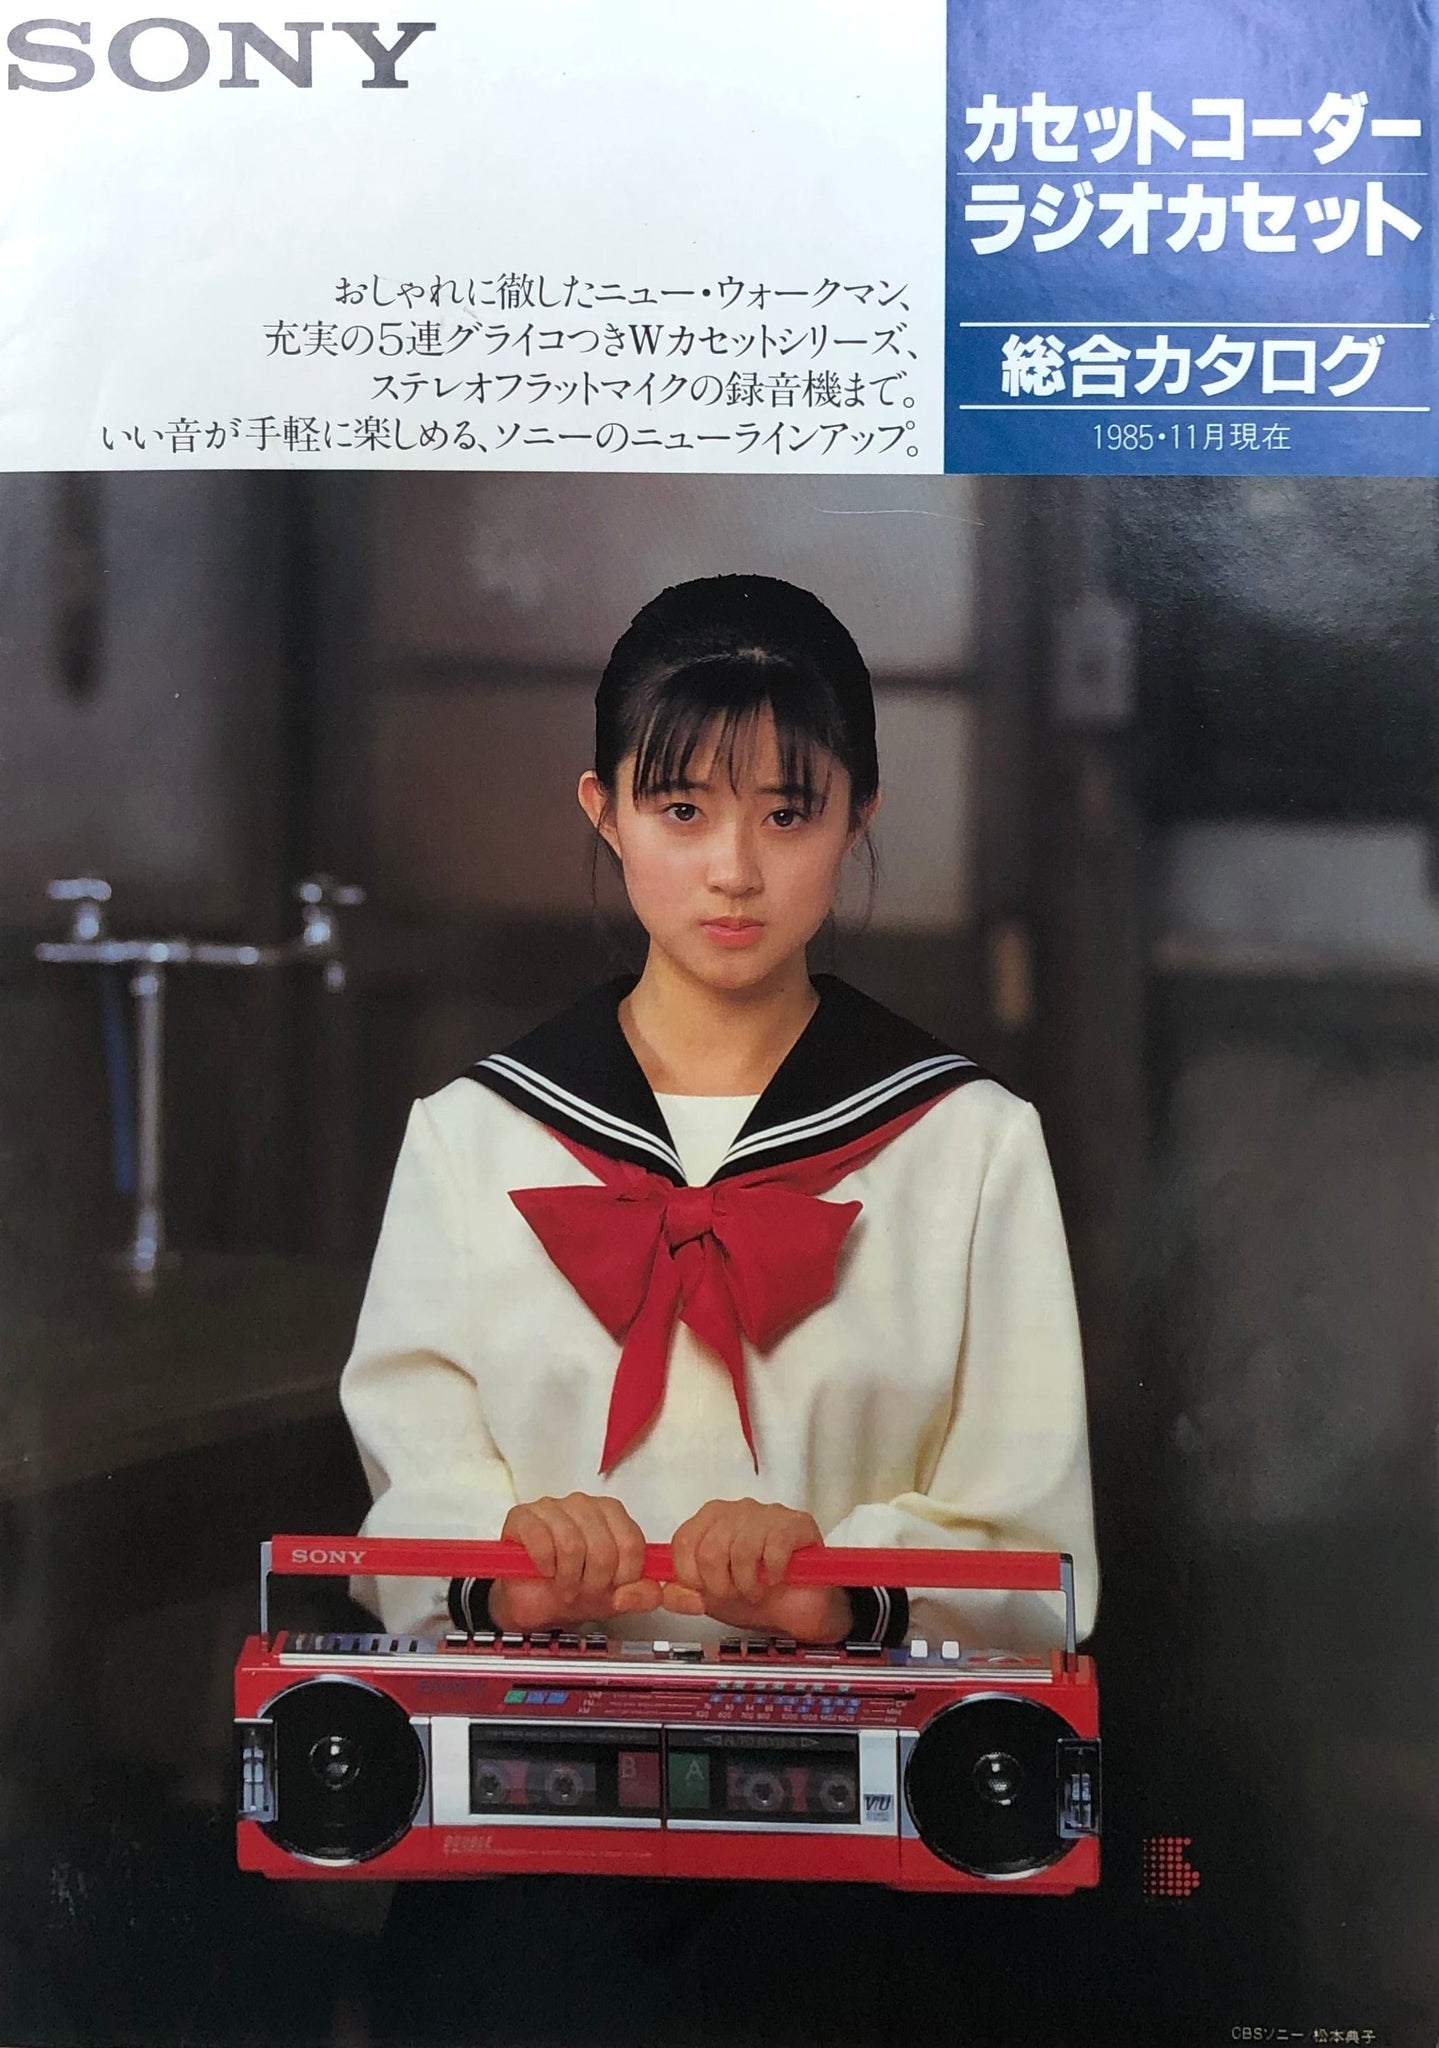 Sony Maxell Denon Japan 1985 Catalogue